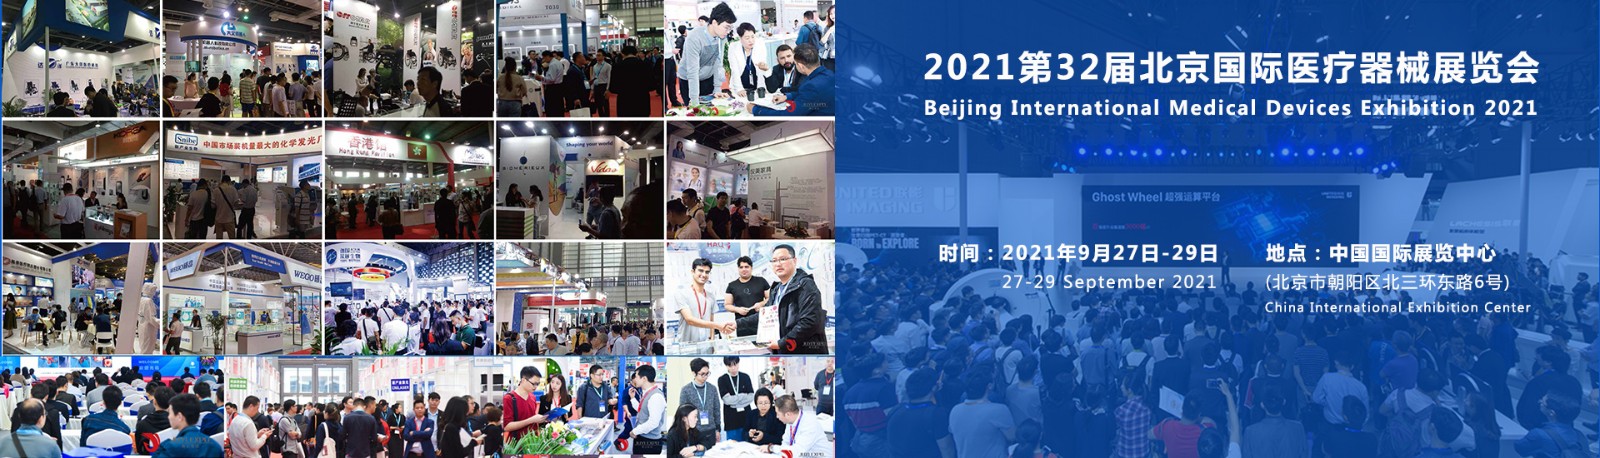 2021北京国际医疗器械展览会倒计时还有4天如期召开